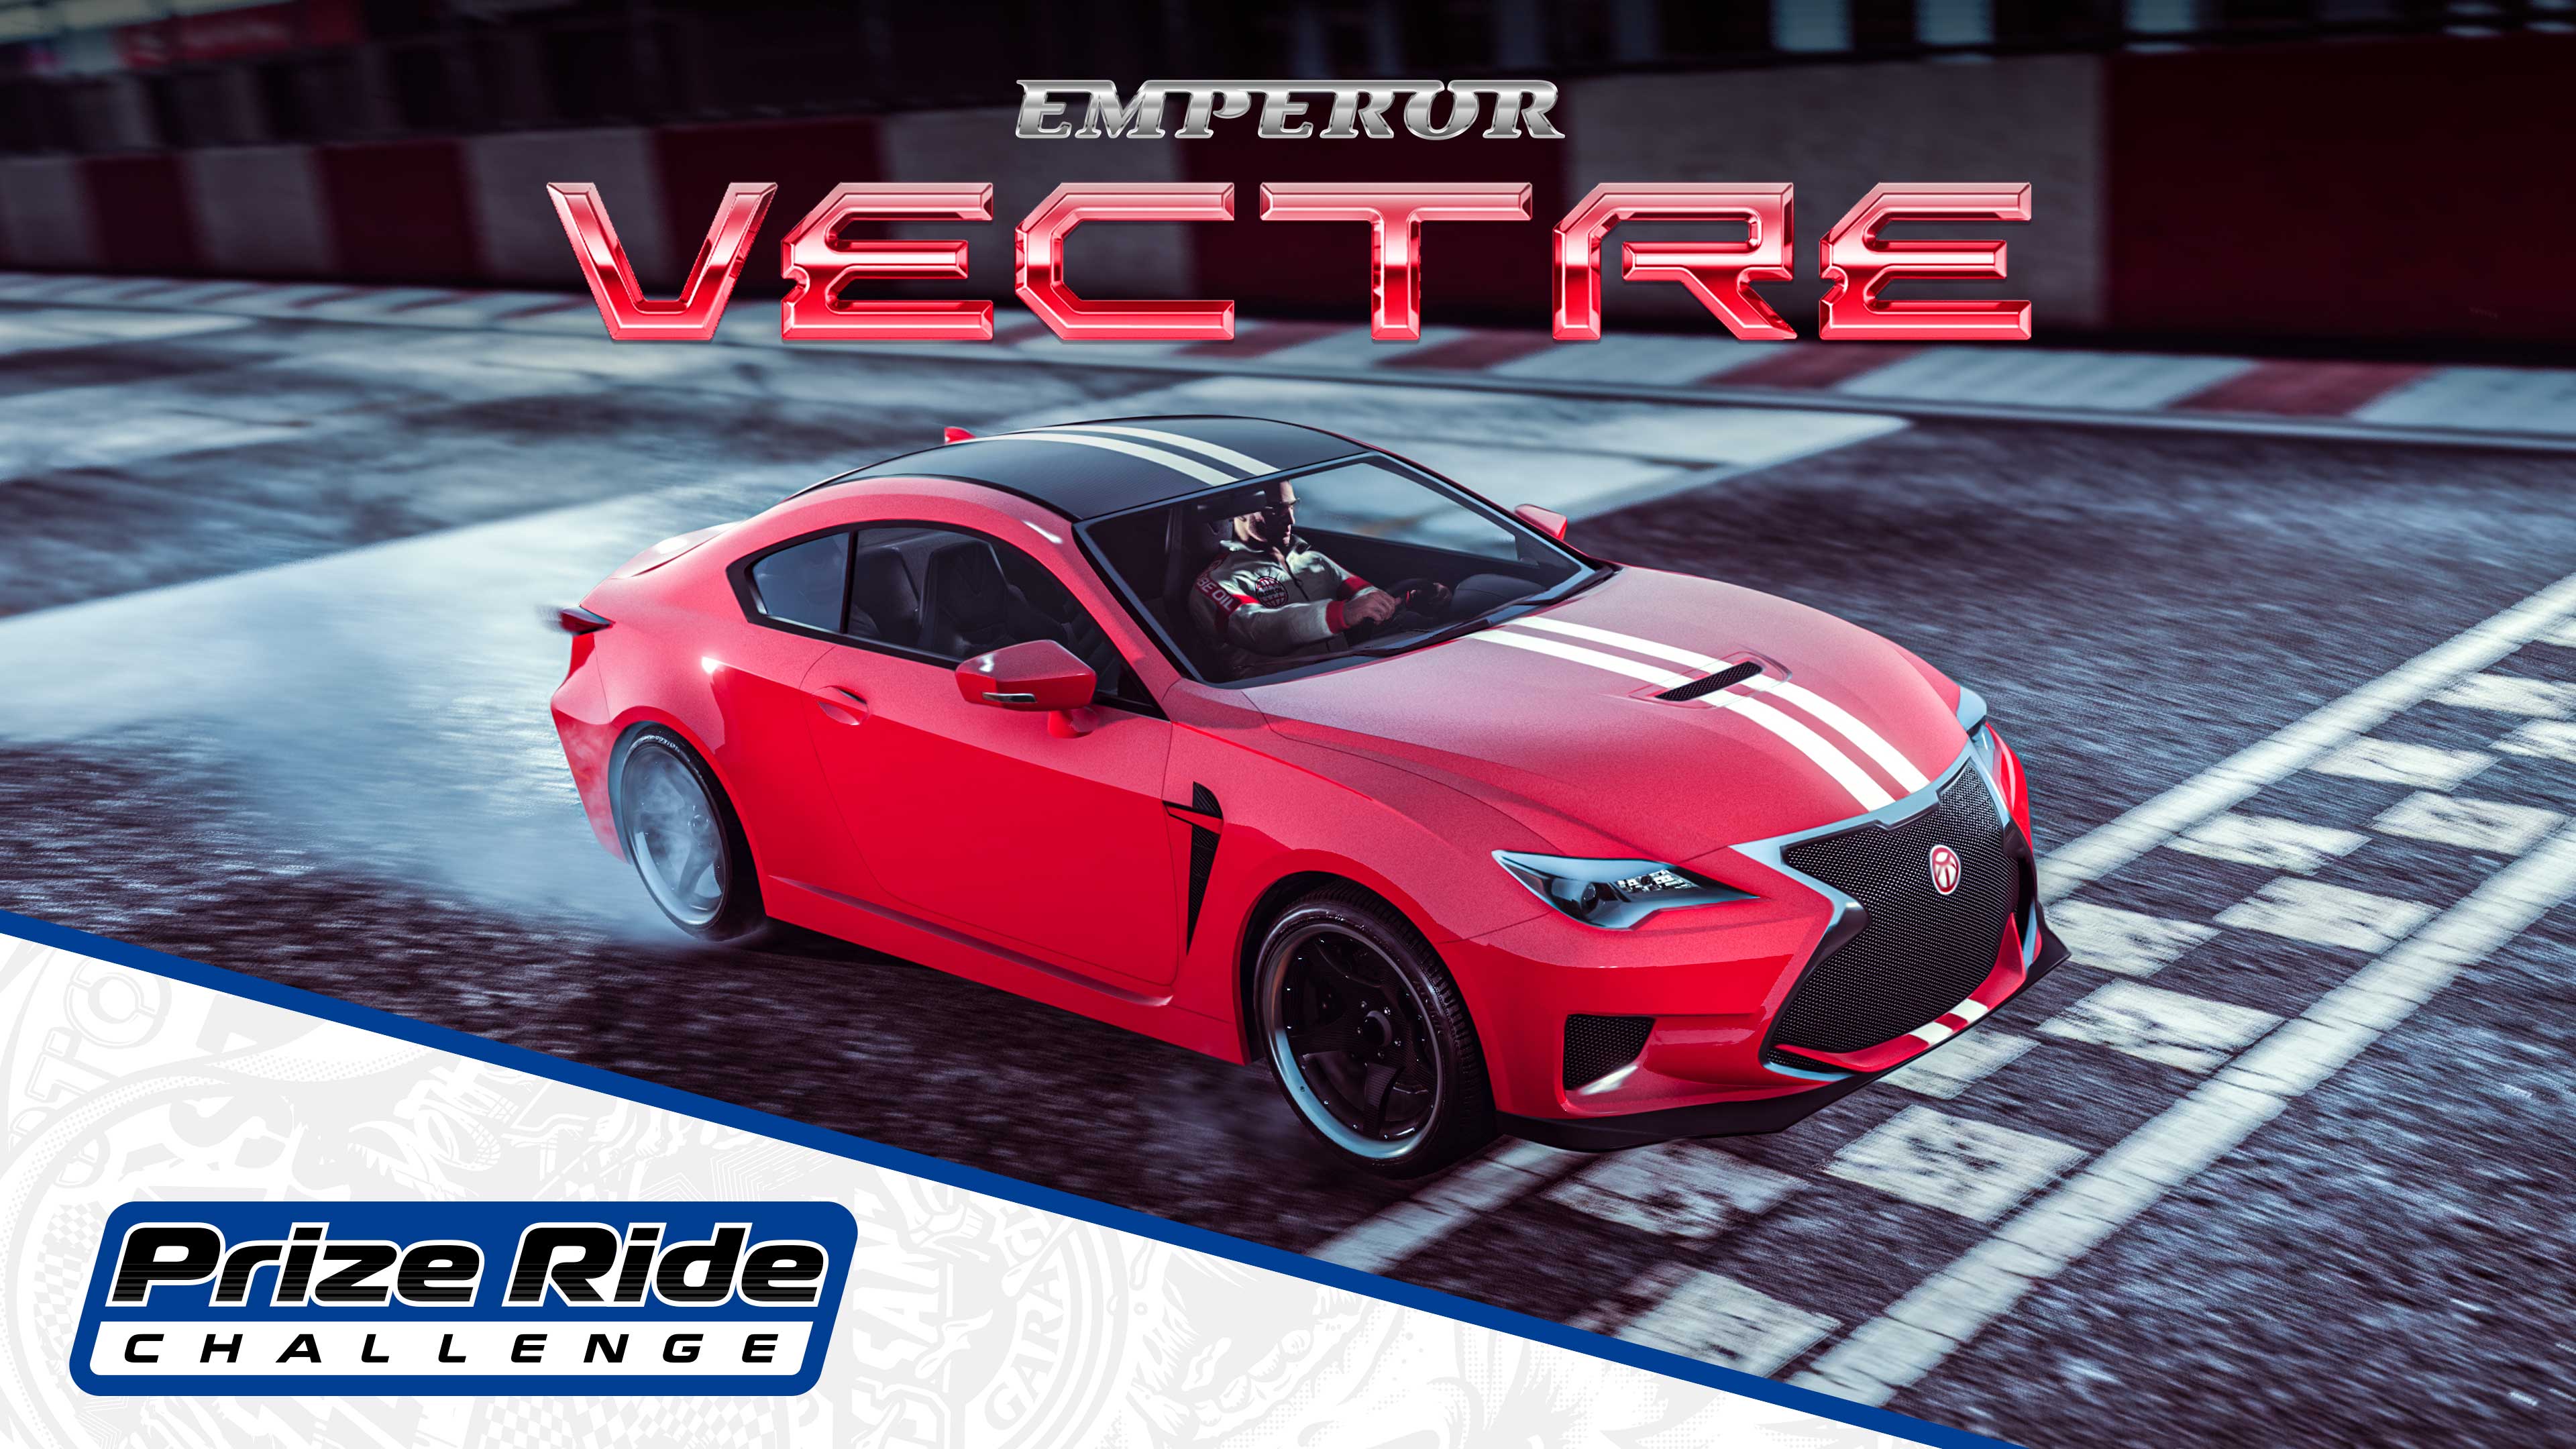 GTA Online Los Santos Tuners Prize Ride: Emperor Vectre